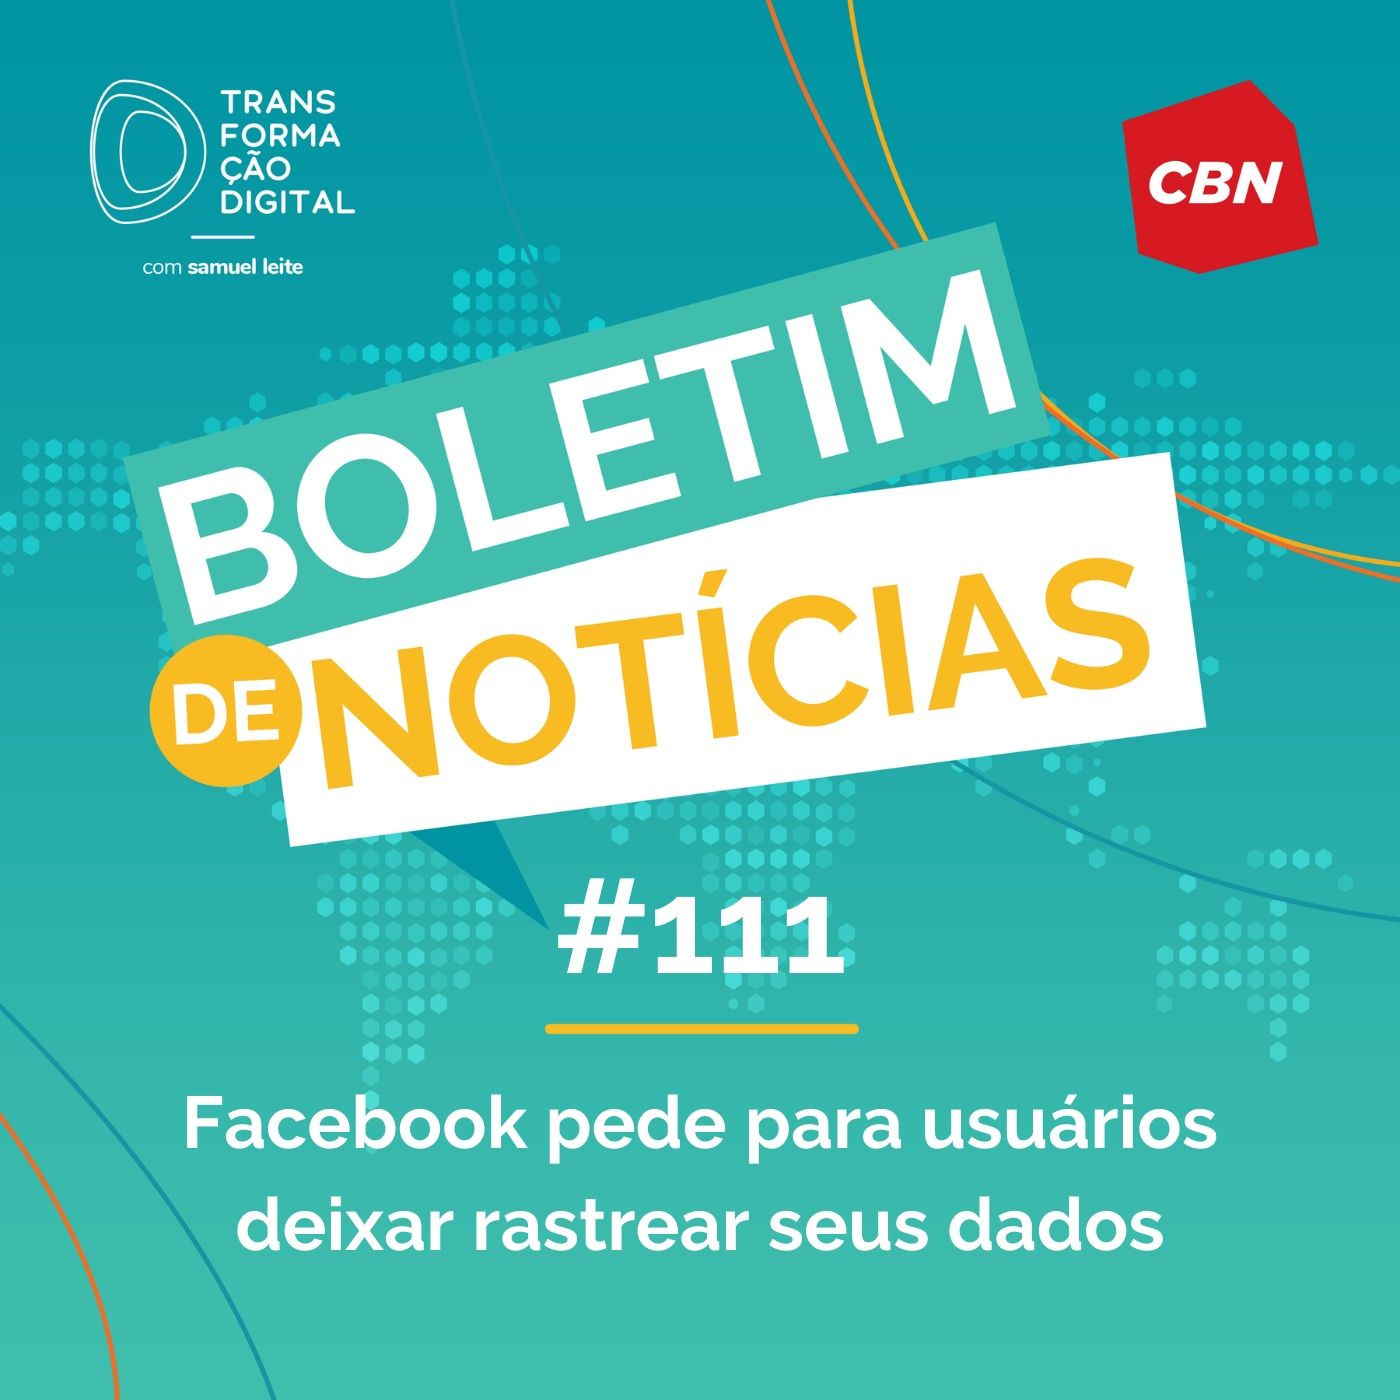 Transformação Digital CBN - Boletim de Notícias #111 - Facebook pede para usuários deixar rastrear seus dados